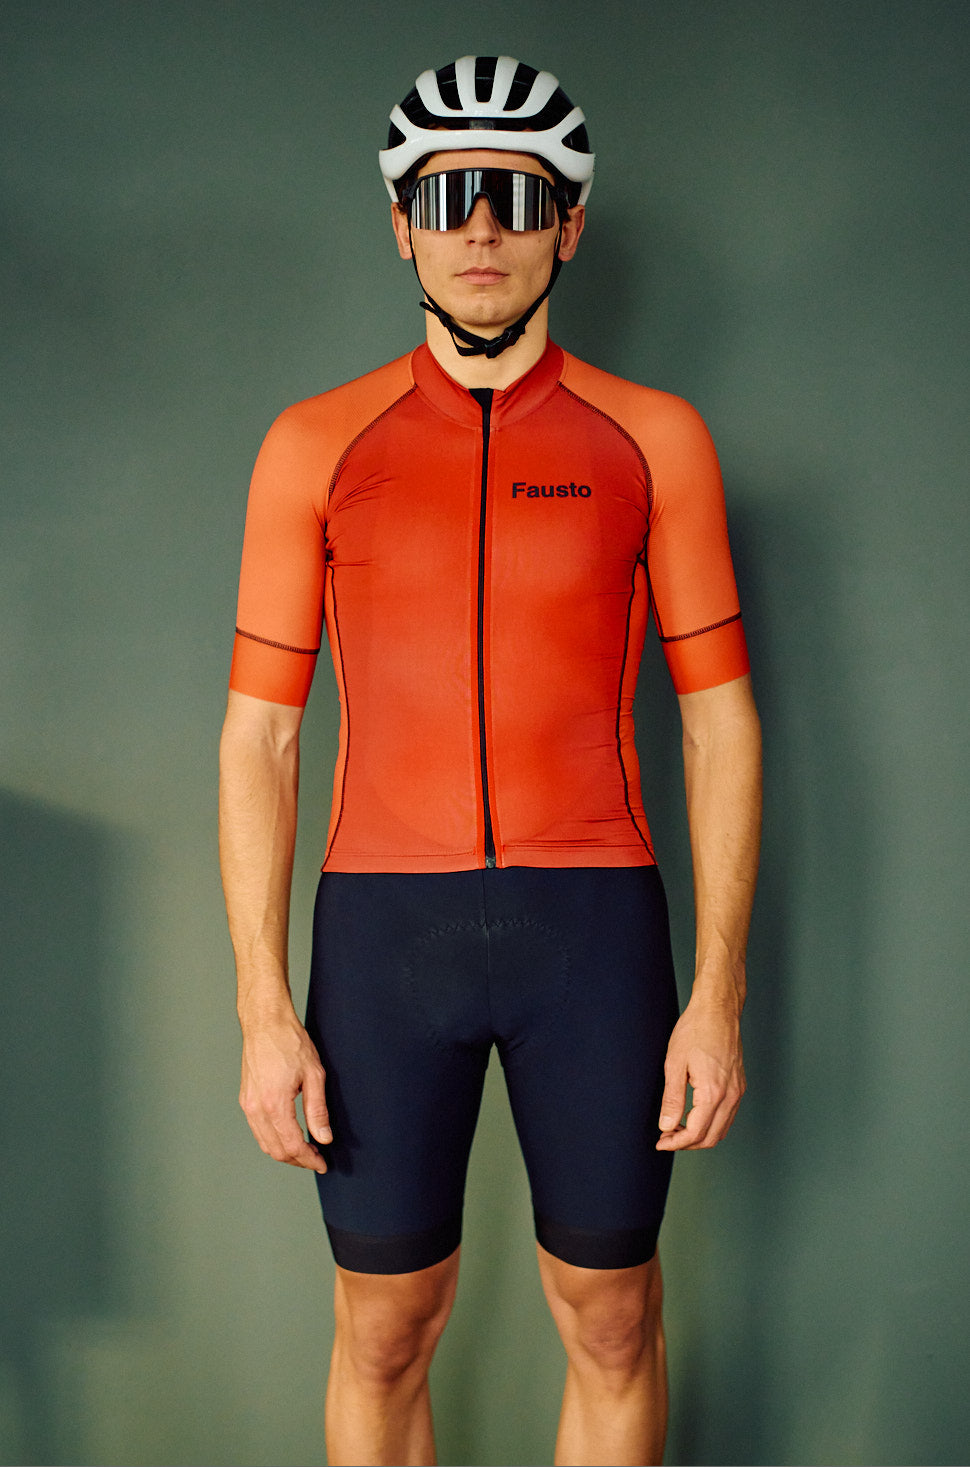 Shades - Men's Short Sleeve Cycling Shirt - Red